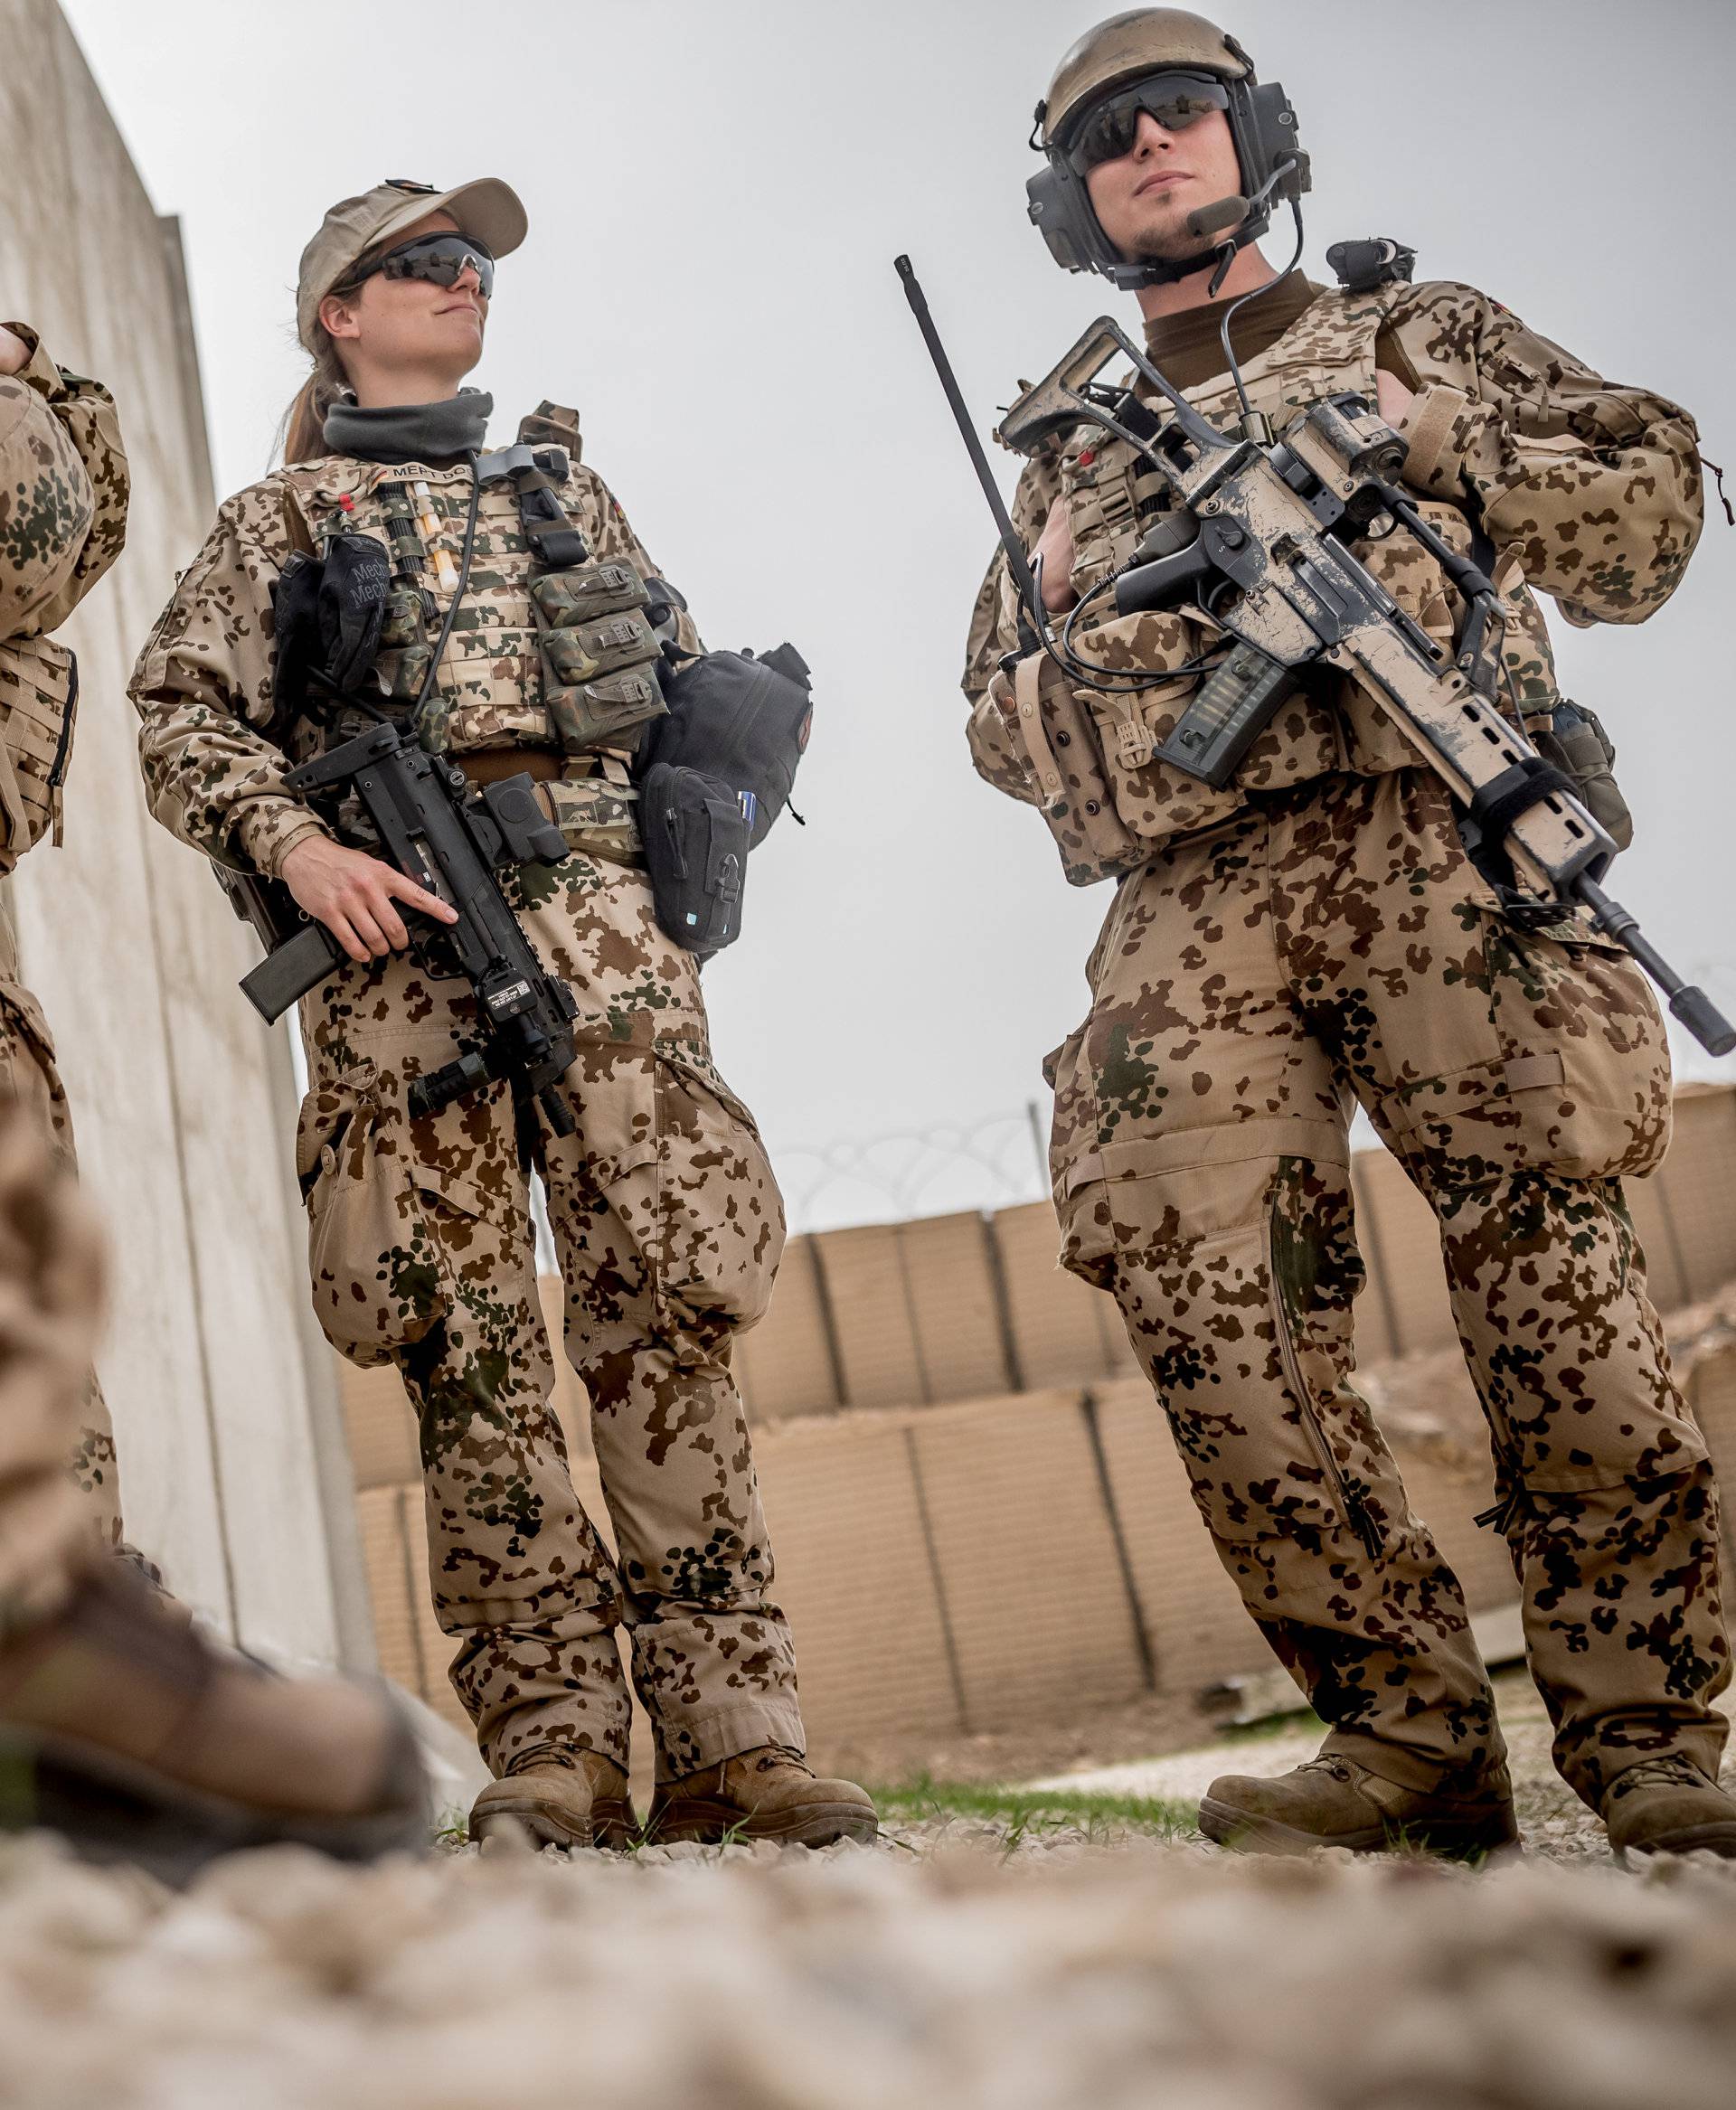 German Defence Minister Ursula von der Leyen visits troops in Afghanistan